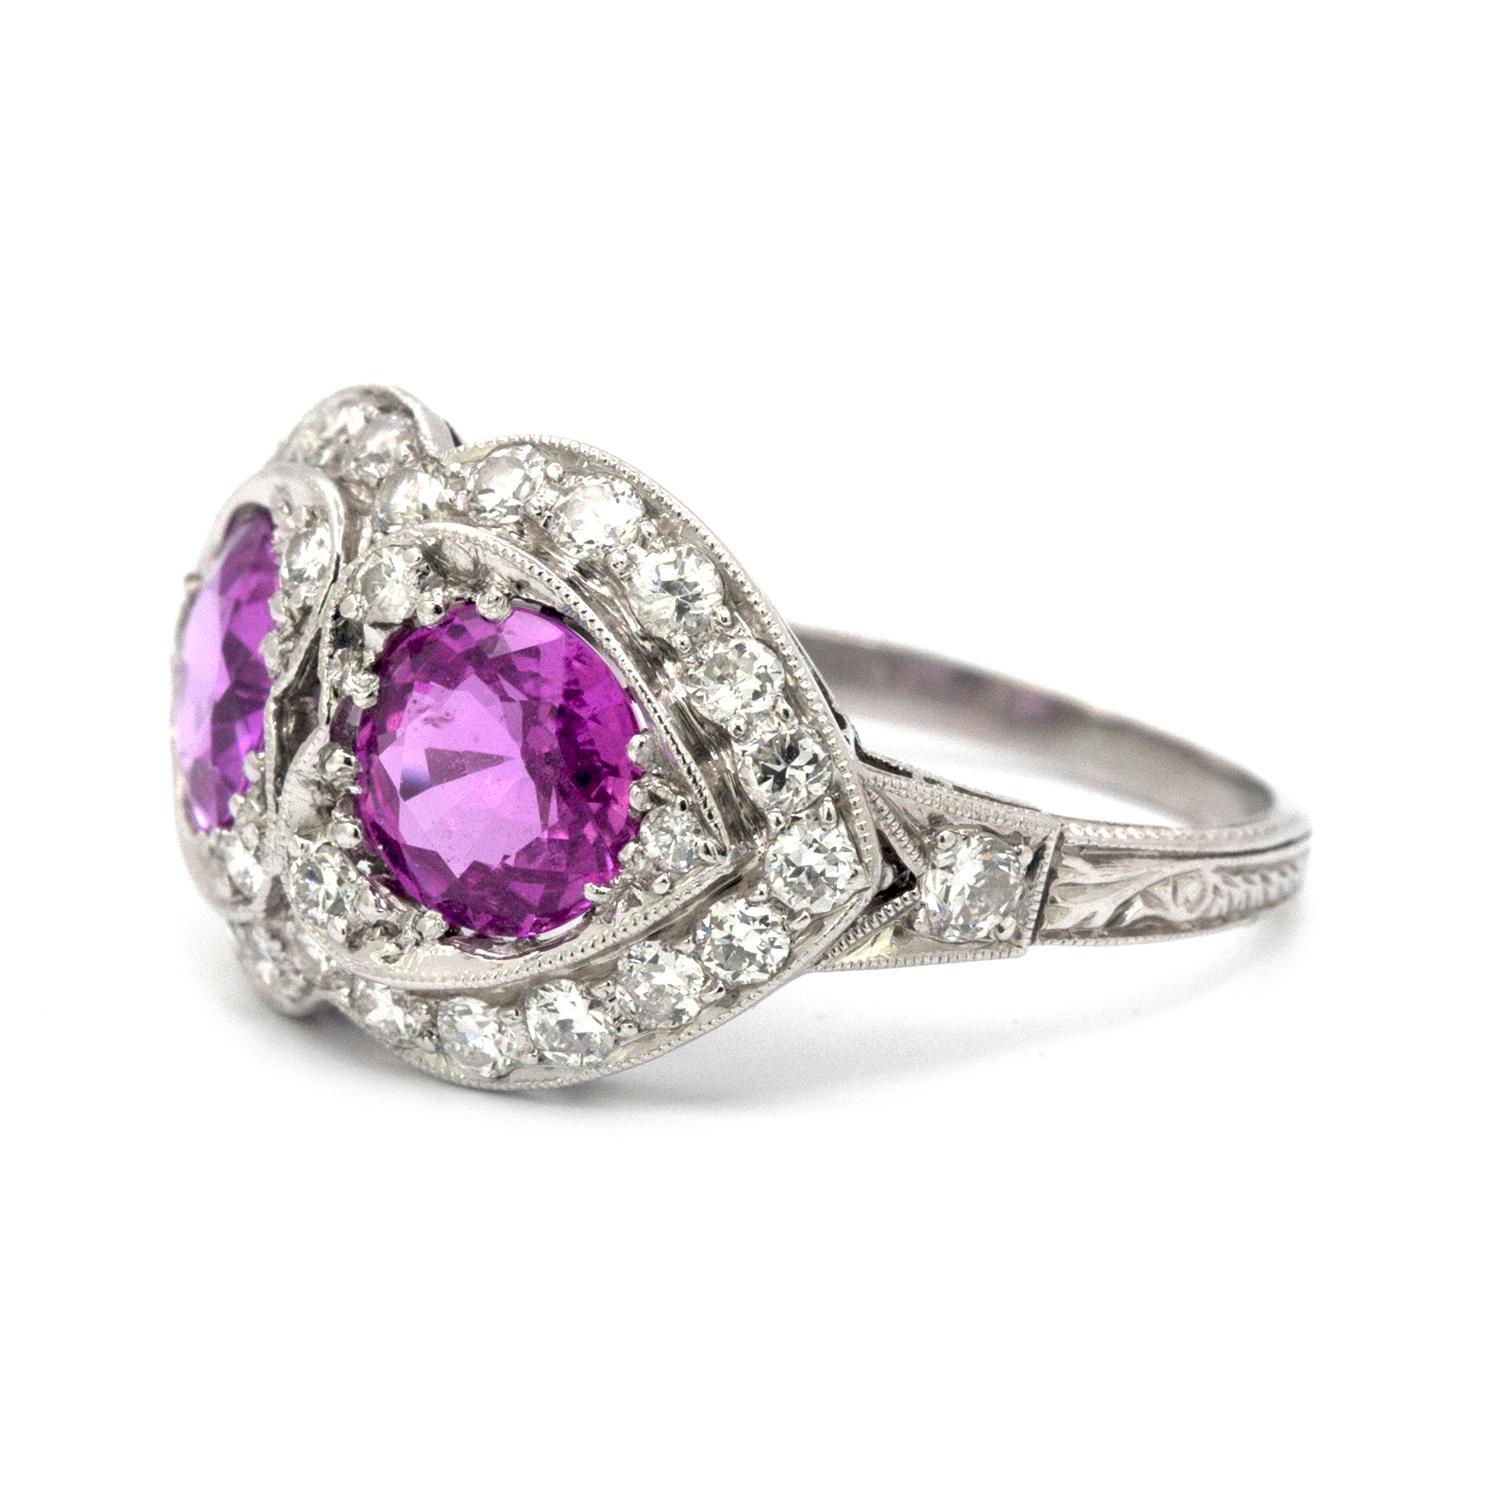 Rosa Saphir und Diamant, Art Deco-Stil 18k Weißgold Ring, der 2 runde rosa Saphiren, die jeweils 6,5 mm messen und haben ein Gesamtgewicht von 2,45 cts. Die rosafarbenen Saphire werden von 32 weißen Diamanten mit einem Gesamtgewicht von ca. 0,65